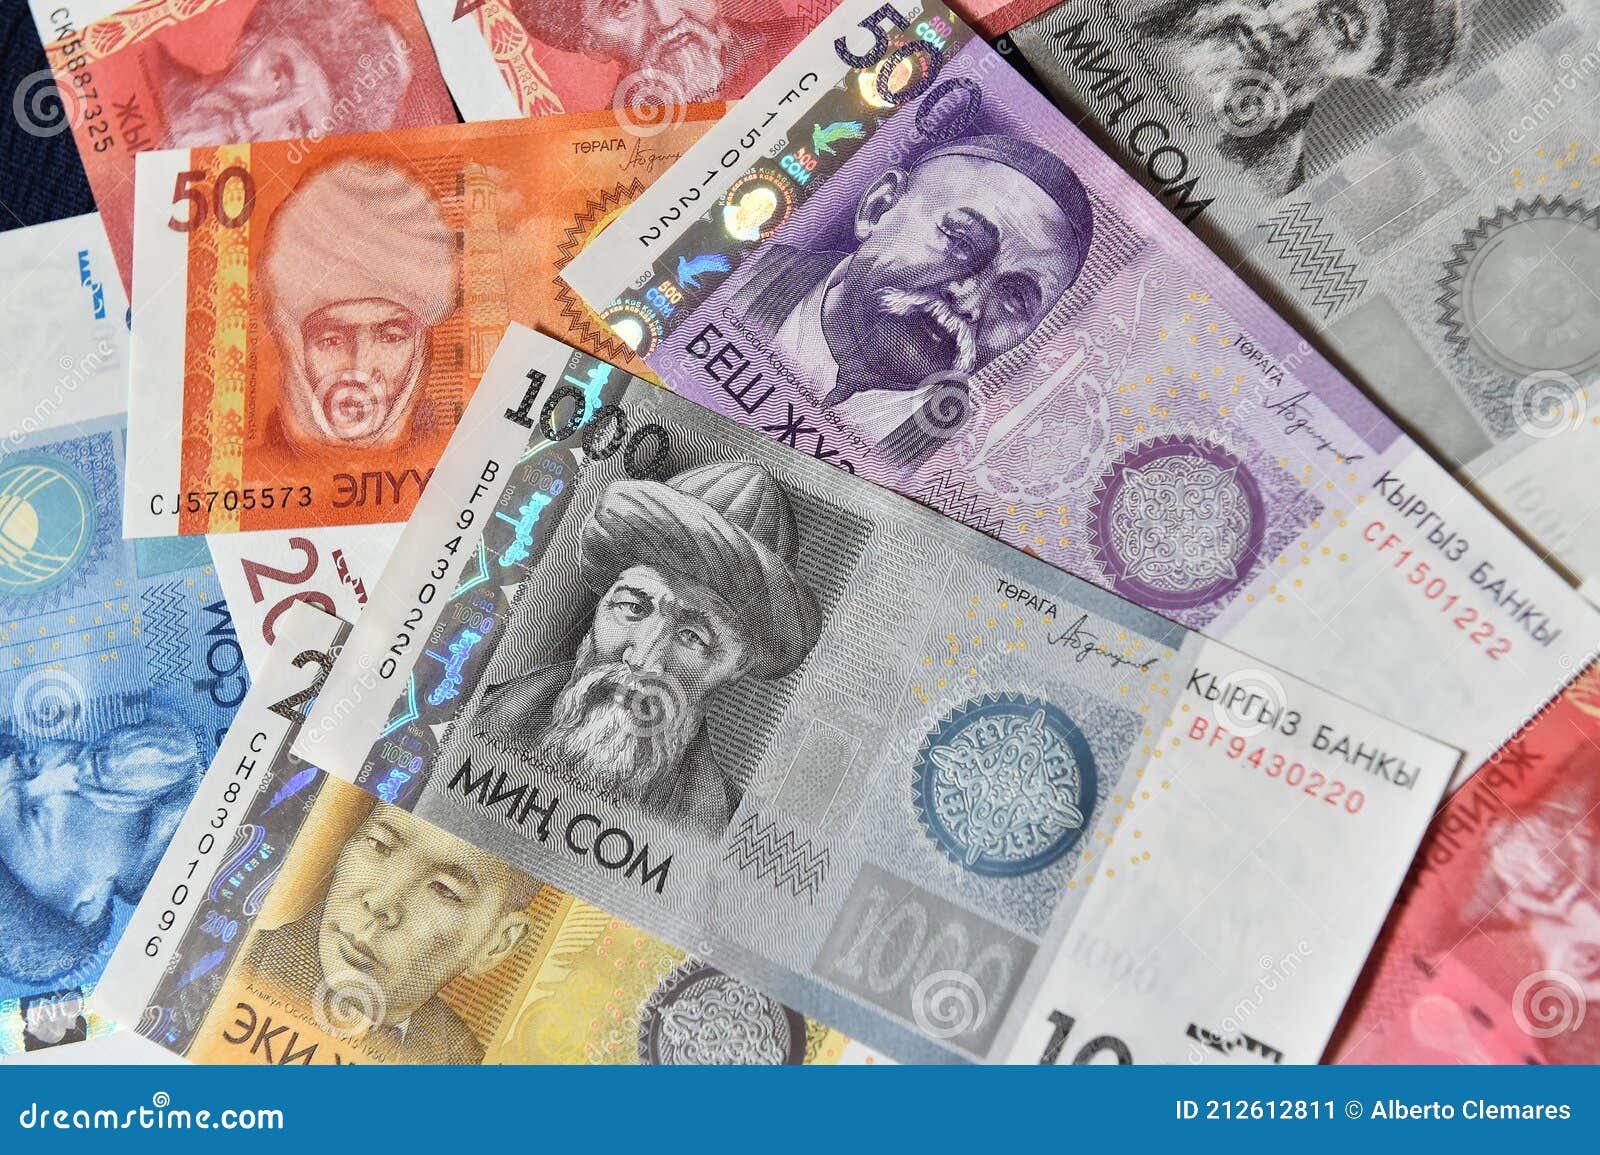 a  current money of kirguistan